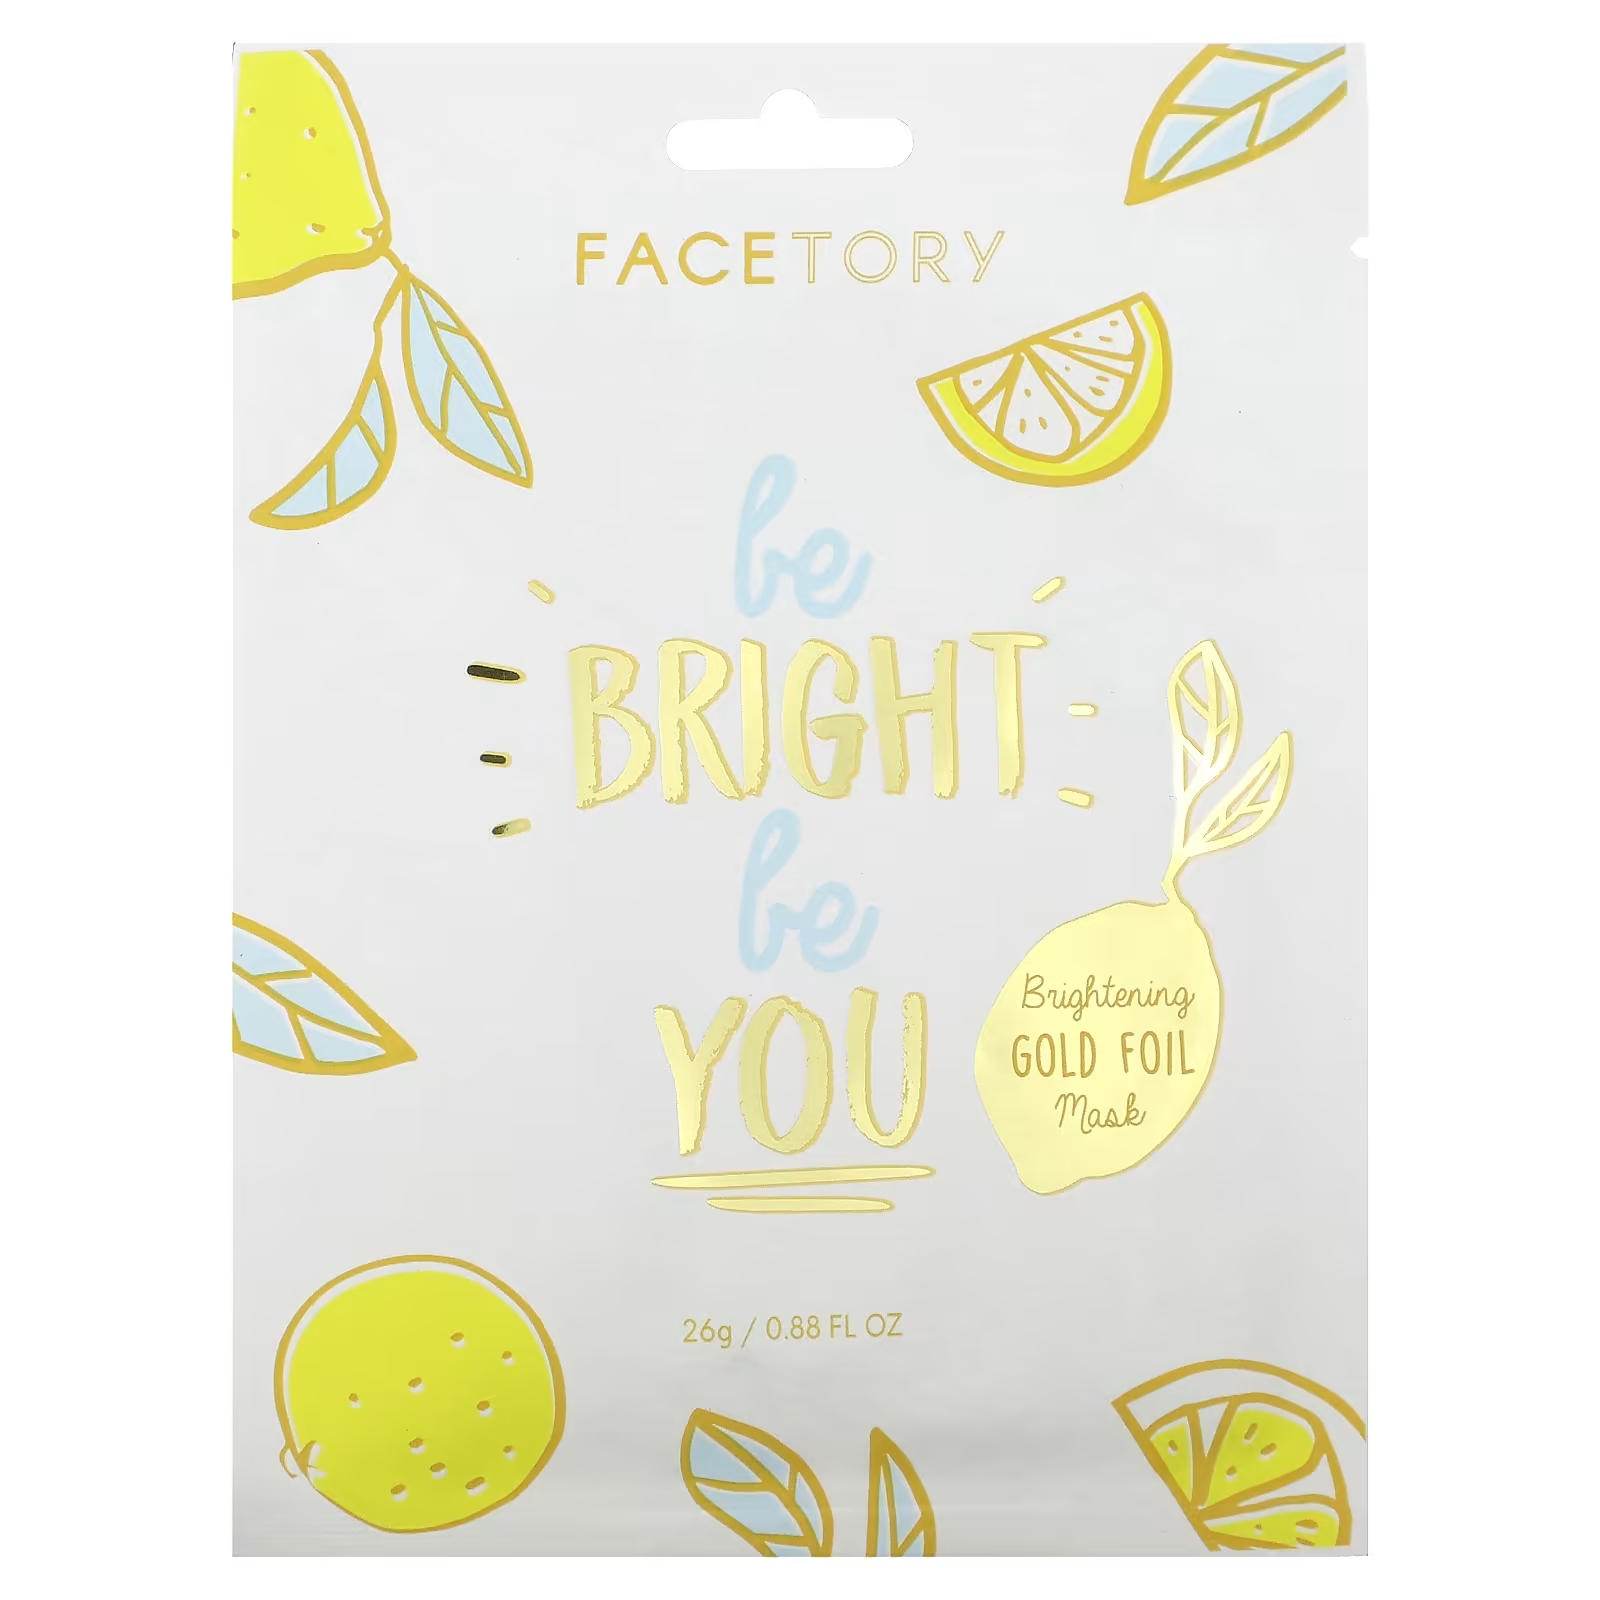 цена Осветляющая косметическая маска FaceTory Be Bright Be You с золотой фольгой, 26 гр.